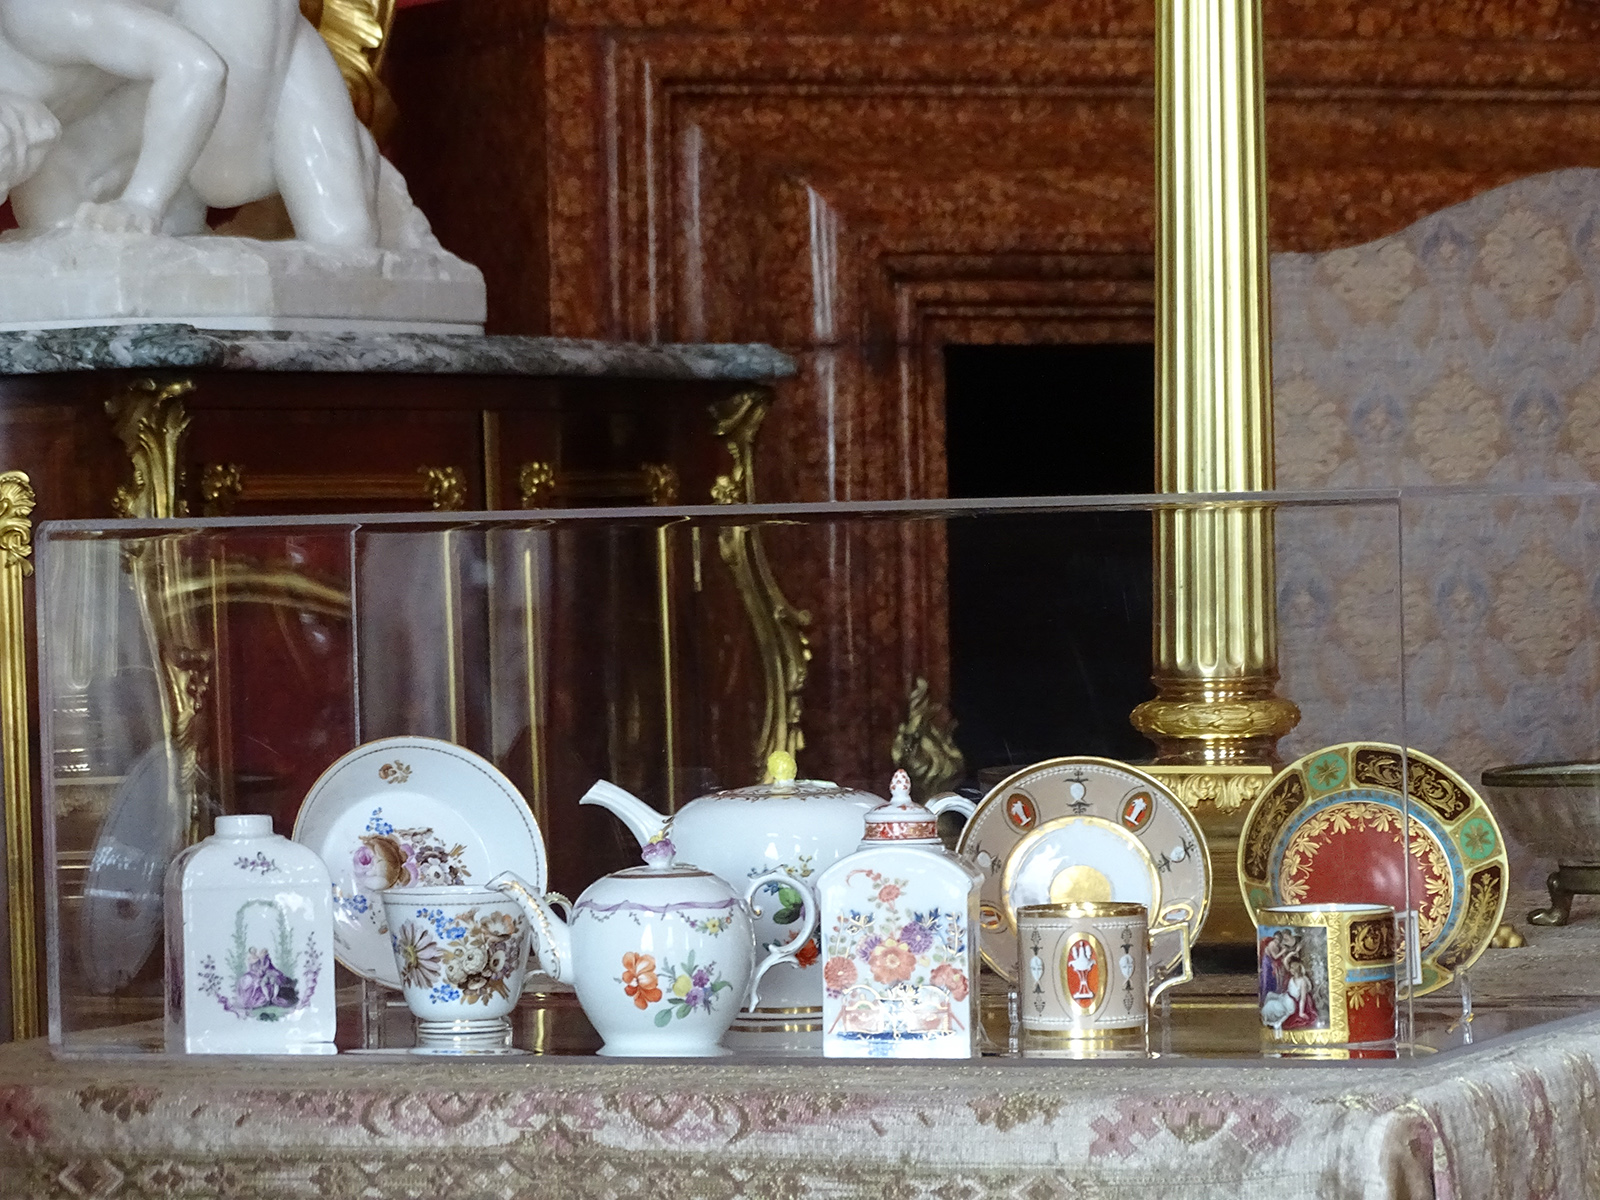 Fotografia przedstawia naczynia porcelanowe umieszczone w przezroczystym pudełku. Od lewej: biała herbatnica z kwiatową dekoracją, biała filiżanka ze spodkiem z kwiatową dekoracją, dwa białe czajniczki różnych rozmiarów z kwiatową dekoracją, biała herbatnica z dekoracją kwiatową, filiżanka ze spodkiem, w kolorze jasnobrązowym, zdobiona. Filiżanka ze spodkiem różnokolorowa (czerwień, zieleń, czerń) ze złotym ornamentem.